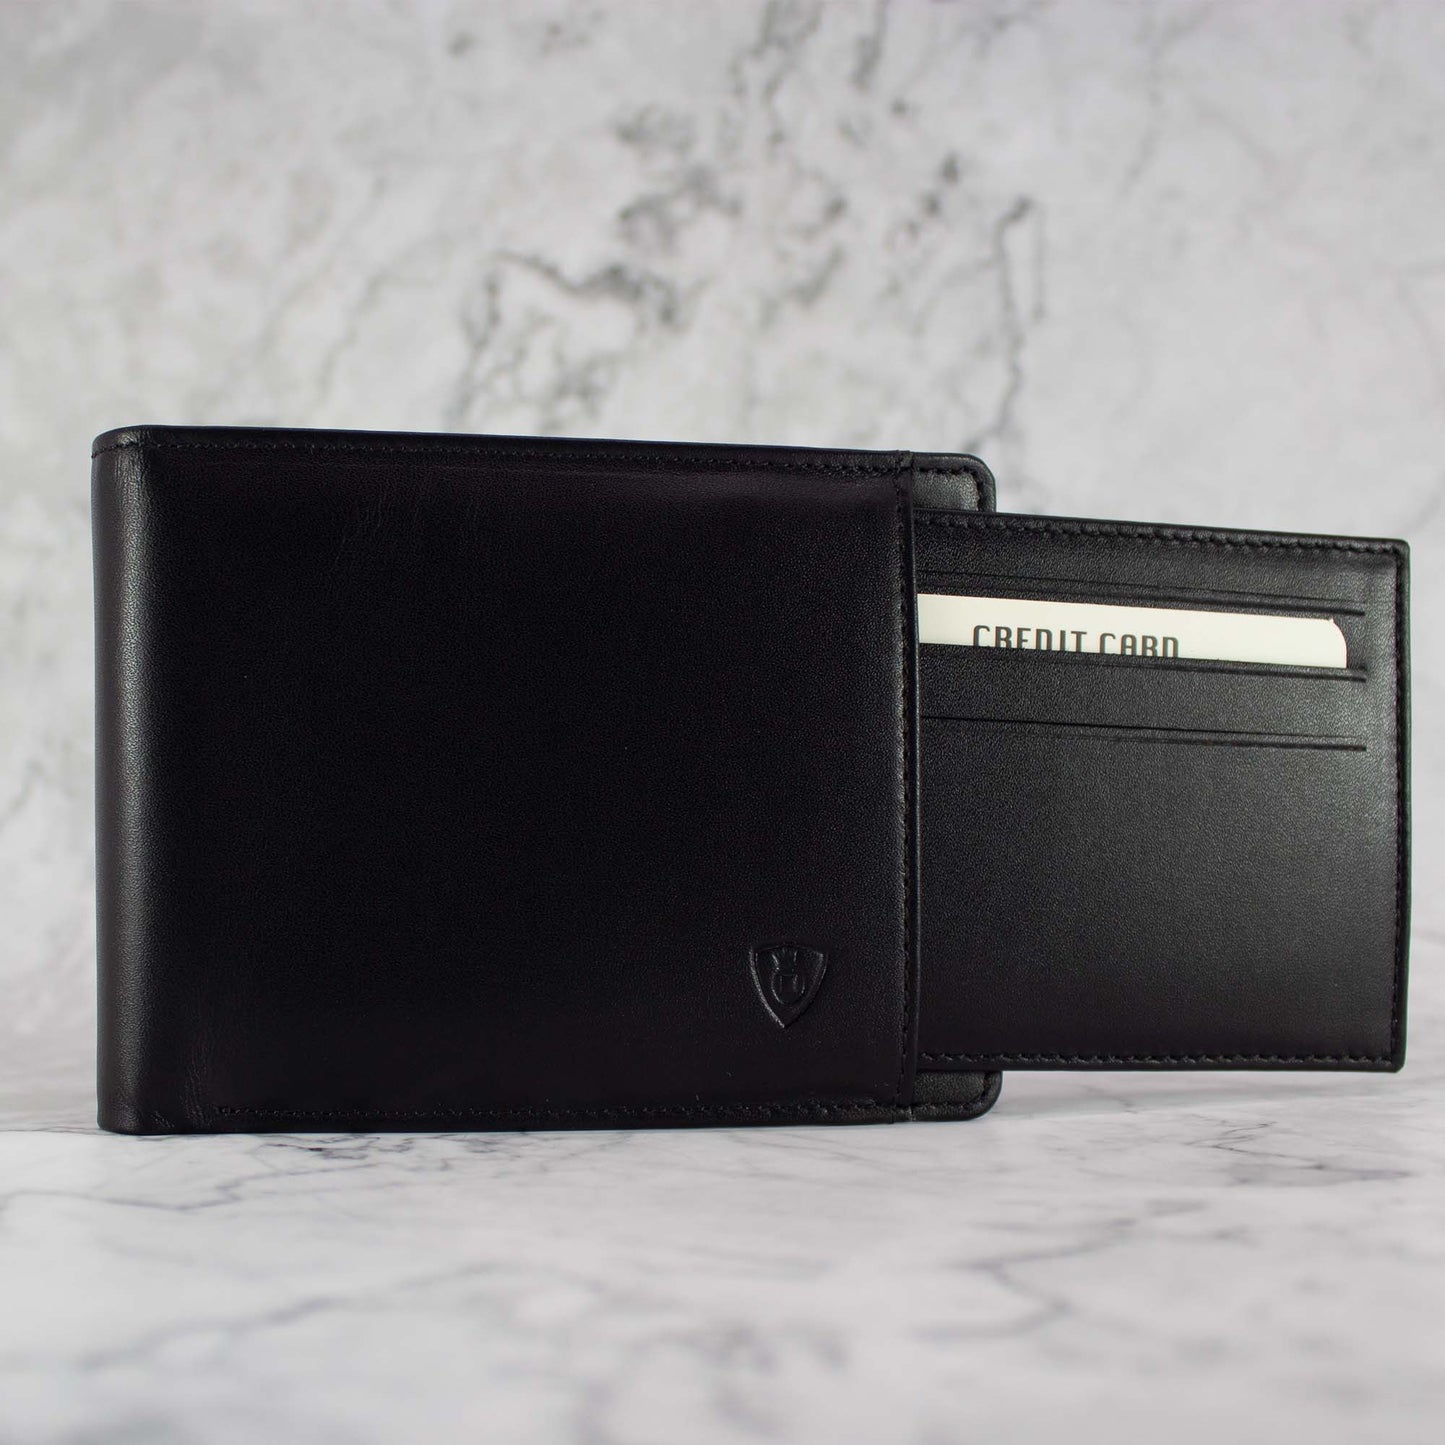 Geschenkset mit hochwertiges Leder Portemonnaie & Kartenetui helloboxshop